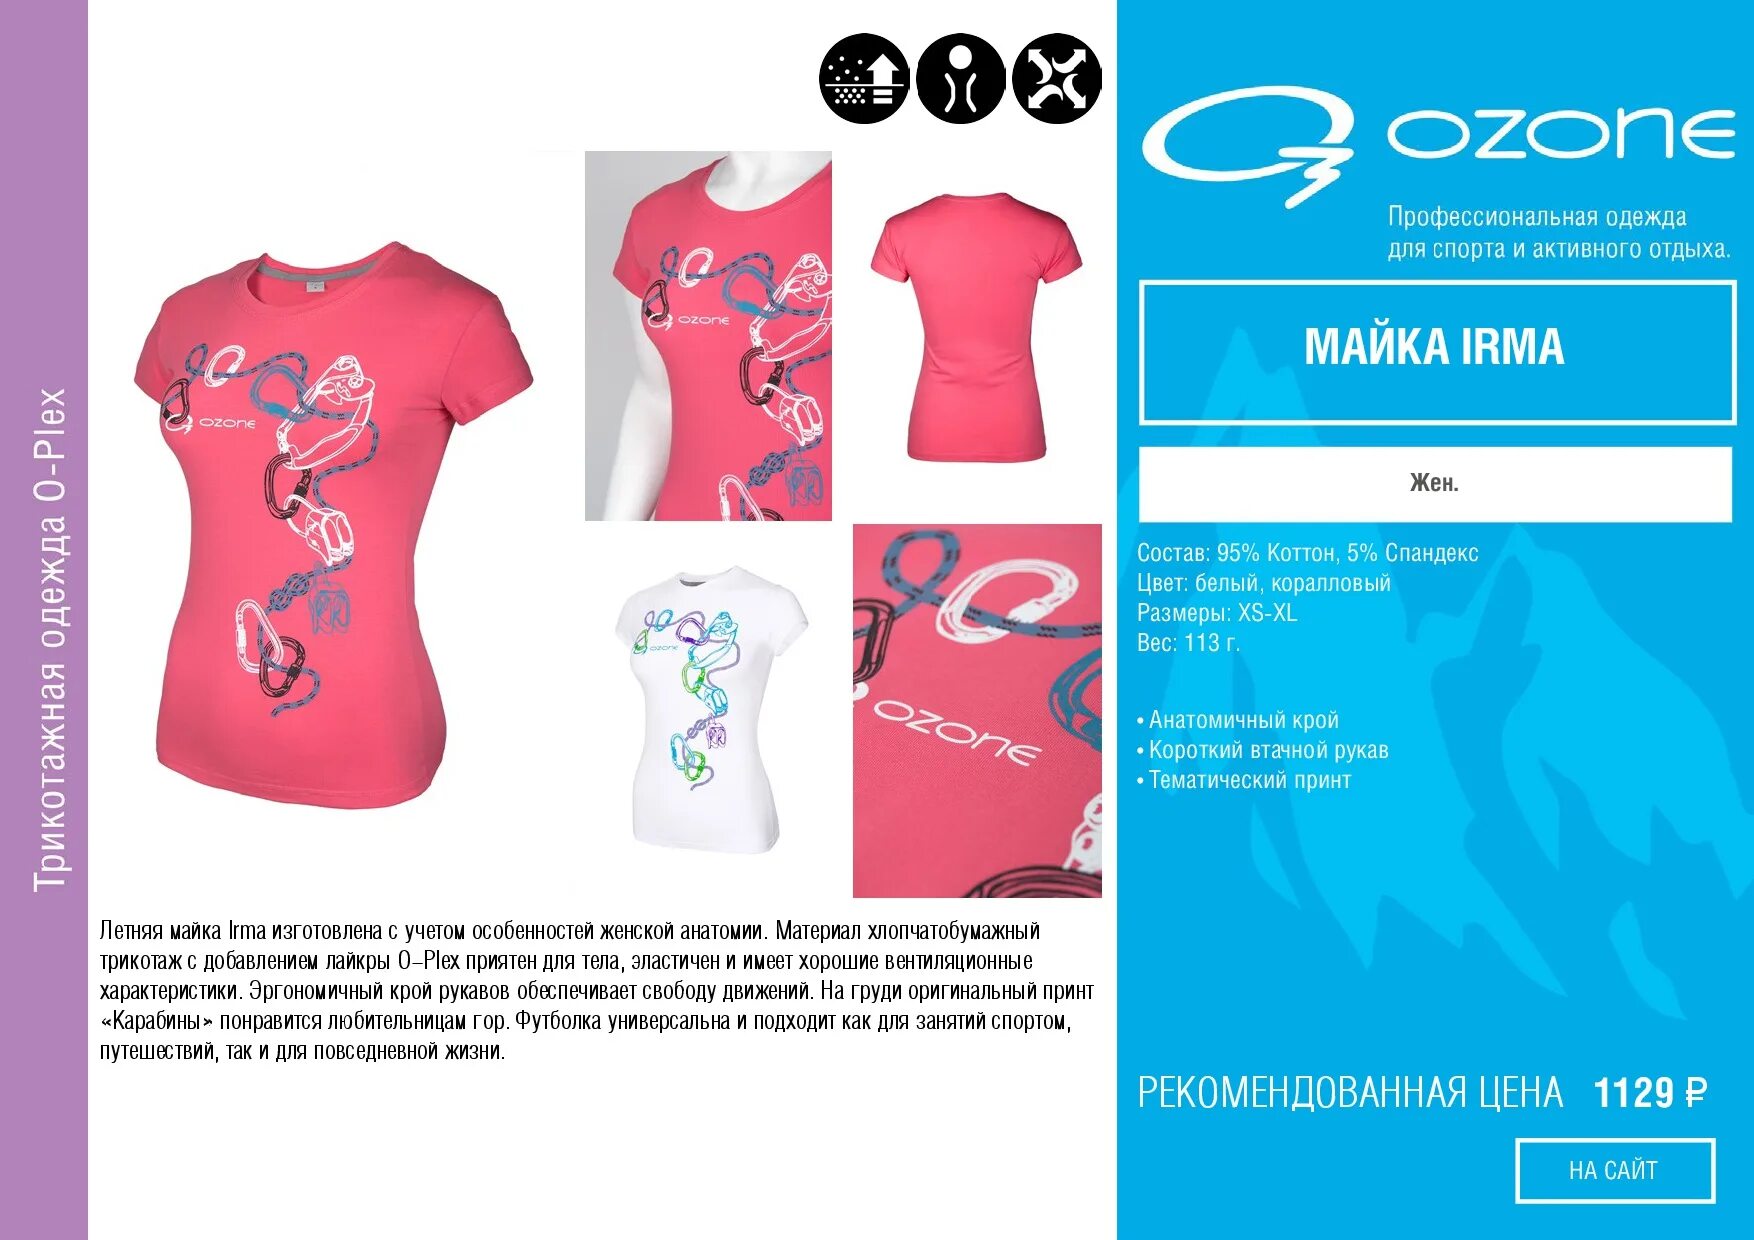 Интернет магазин озон женская одежда распродажа. Озон футболки женские. Озон интернет-магазин каталог женской одежды футболки. Озон платья женские. Фирменная одежда Озон.